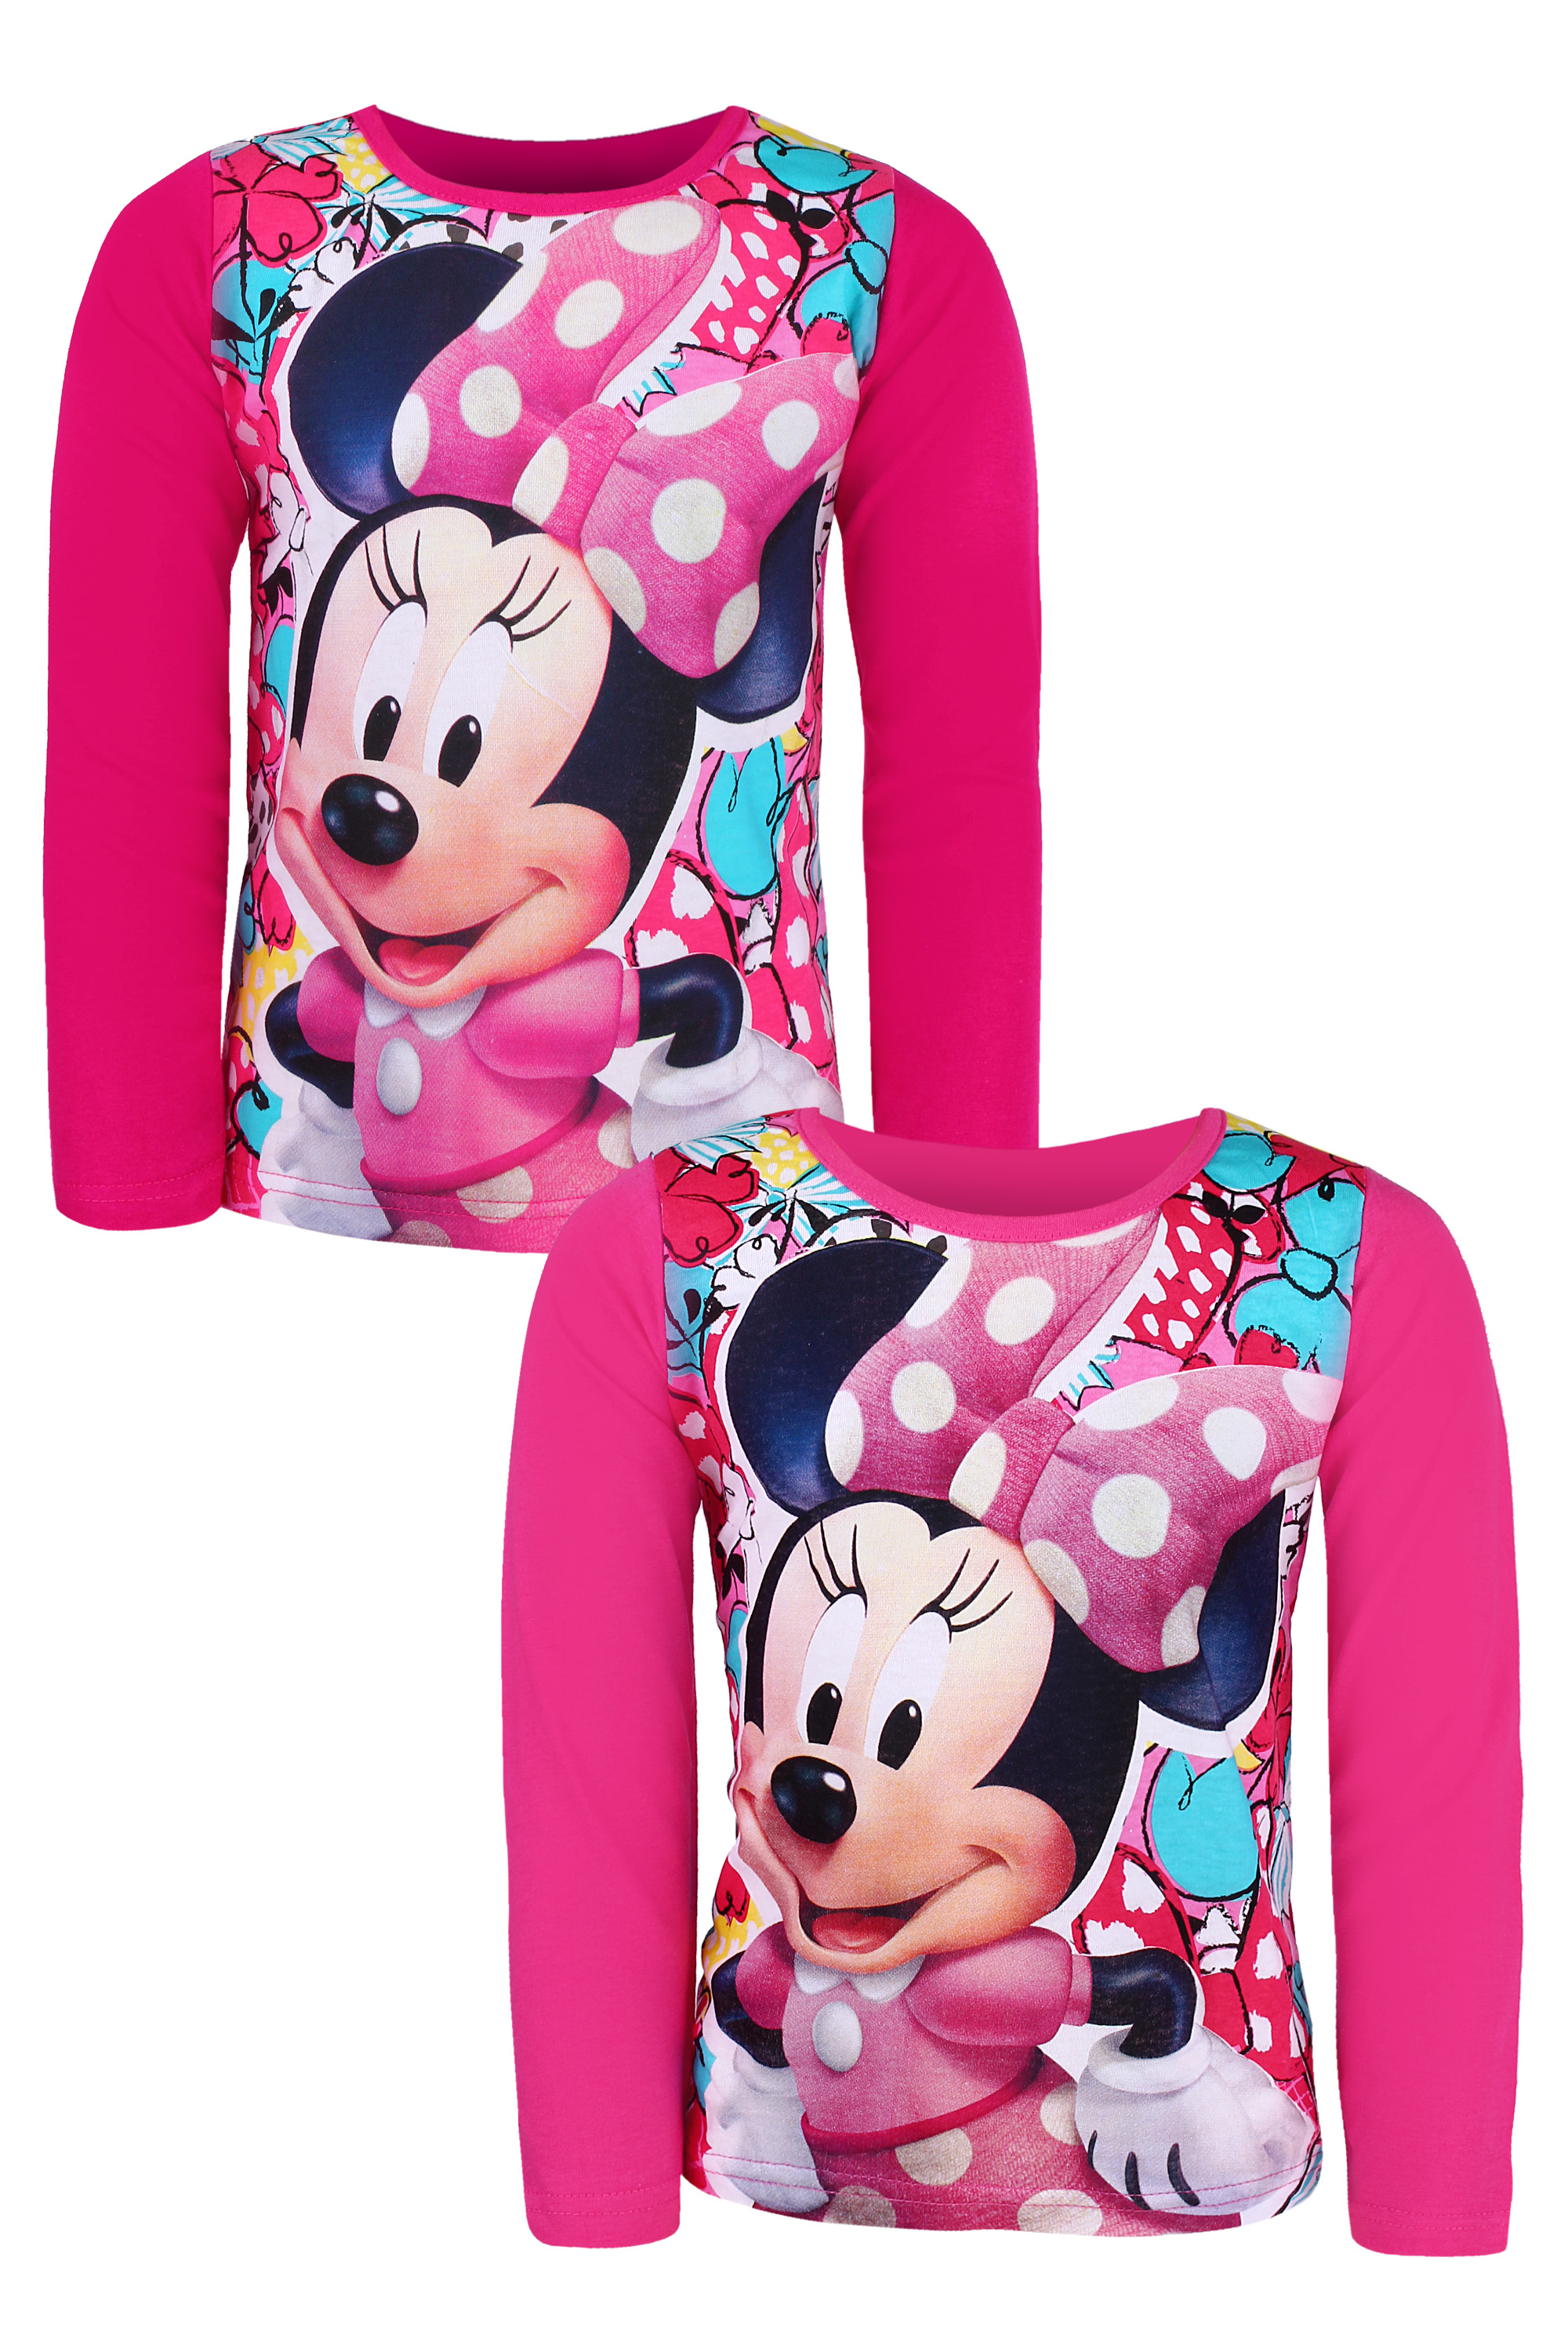 Minnie Mouse - licence Dívčí triko - SETINO Minnie ST-71, růžová Barva: Růžová světlejší, Velikost: 110